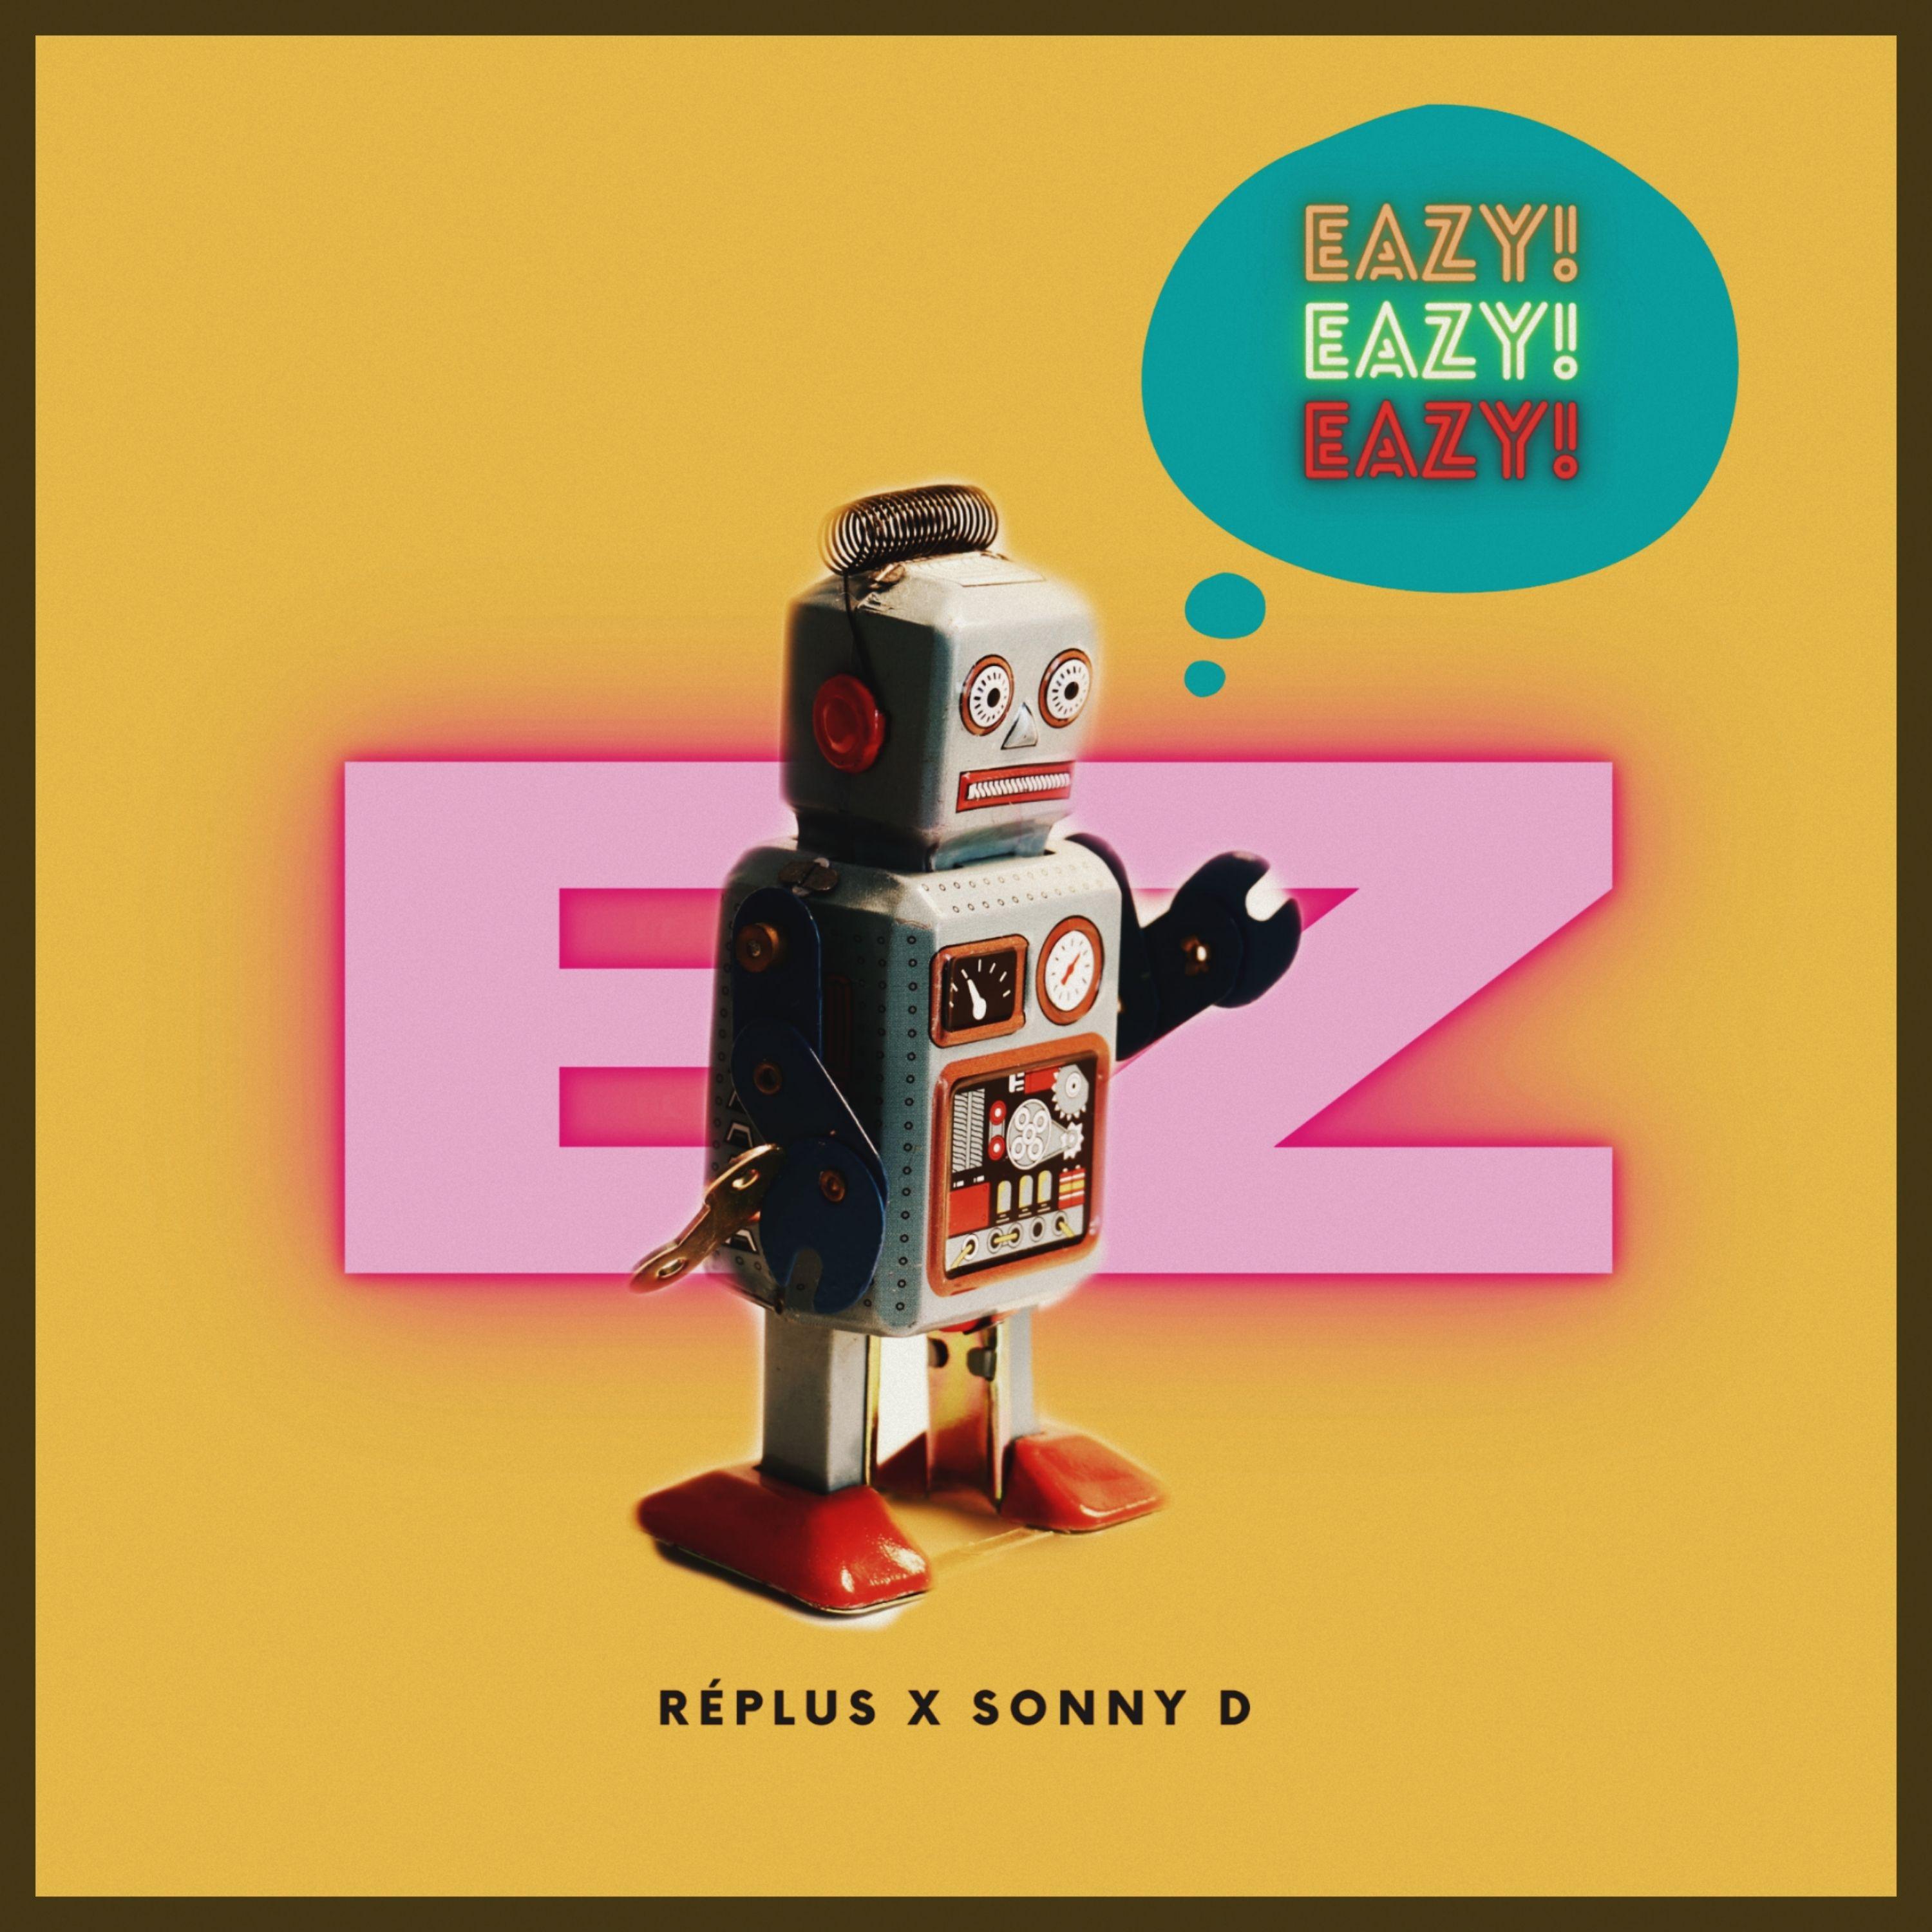 replus - Ez [Eazy]